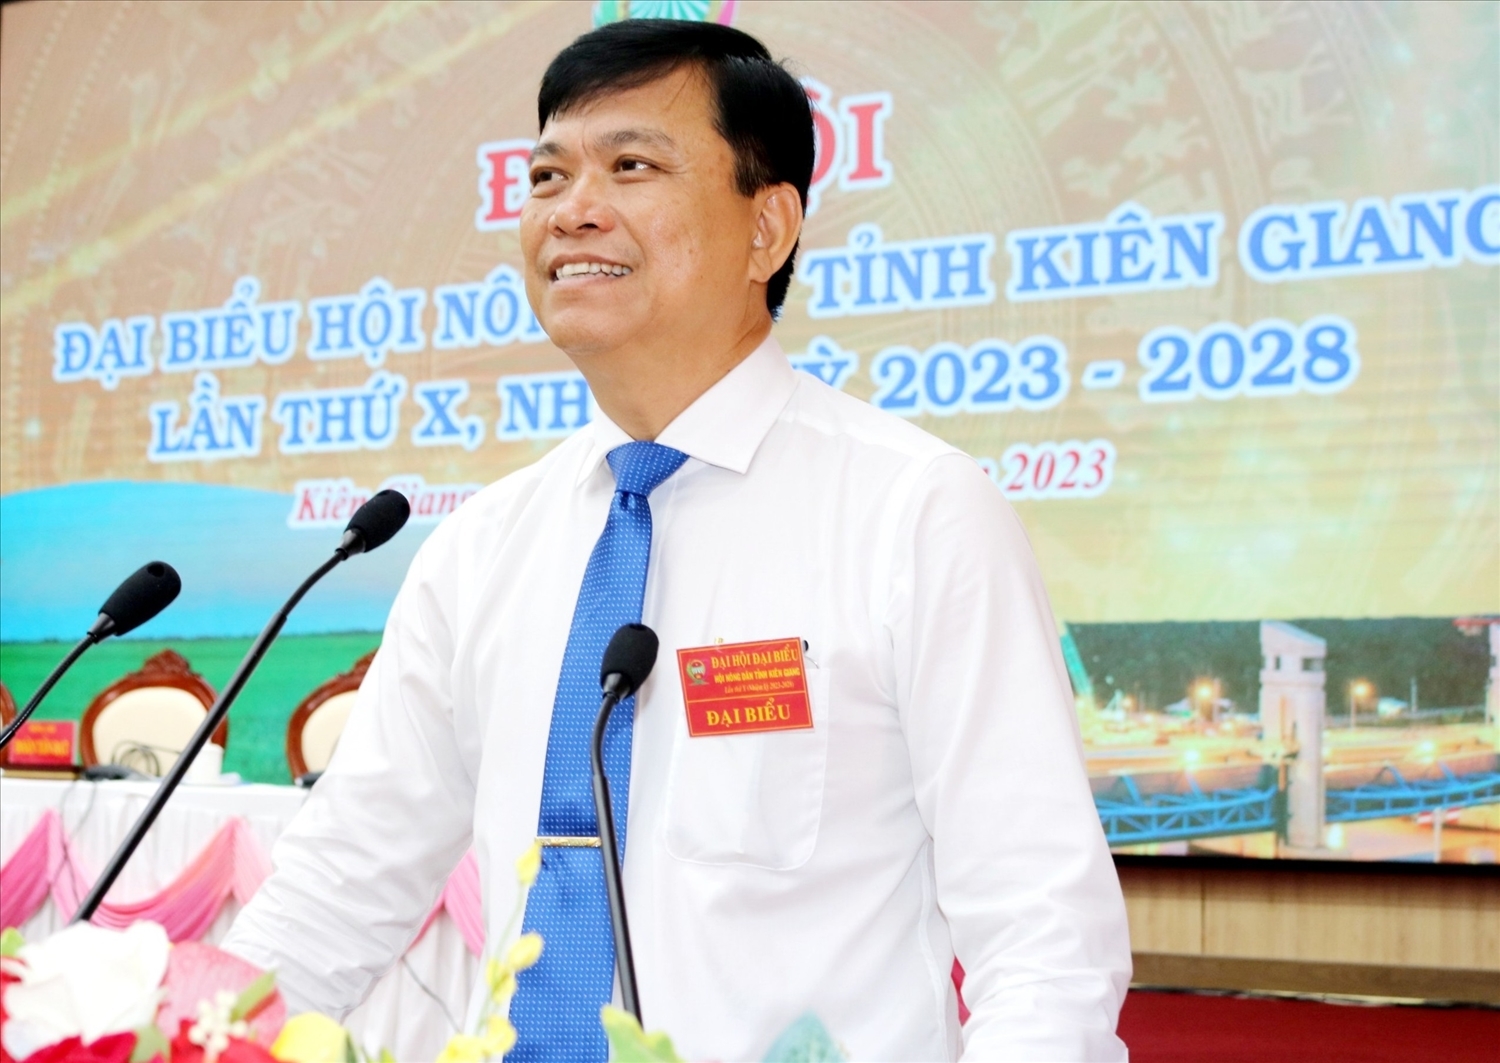 Ông Đỗ Trần Thịnh, Chủ tịch Hội Nông dân tỉnh Kiên Giang phát biểu khai mạc Đại hội